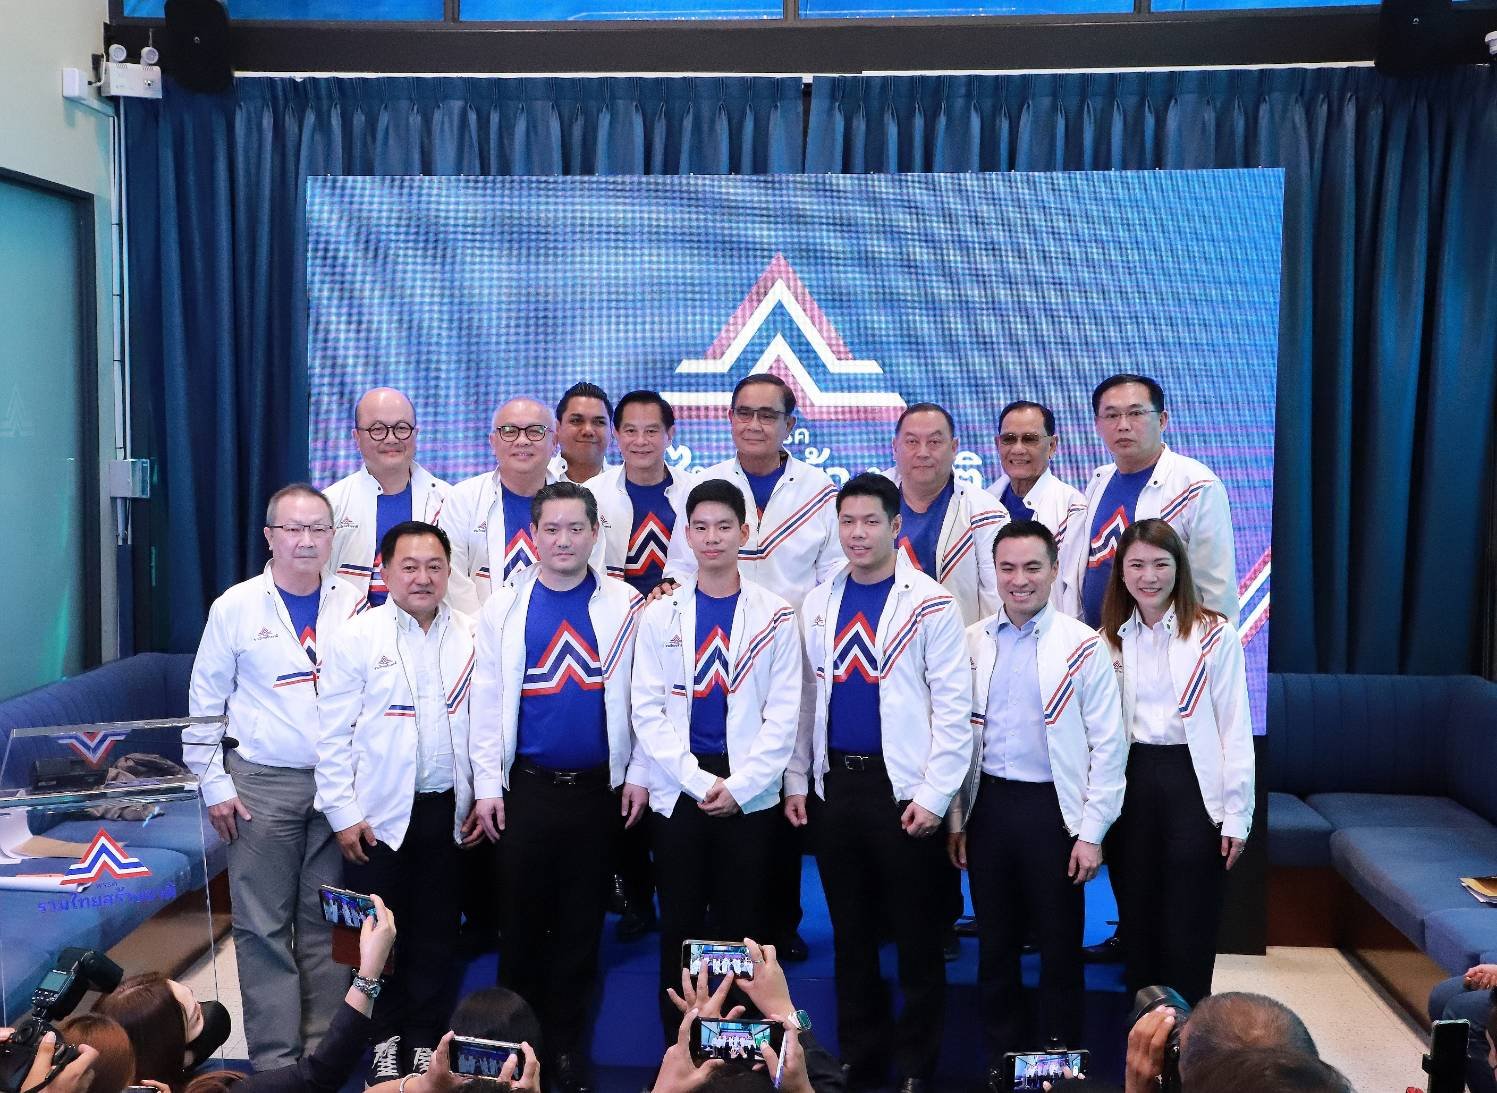 “รวมไทยสร้างชาติ” เปิดตัวทีมเศรษฐกิจชุดใหญ่สดใหม่ หน้าไม่ช้ำ   